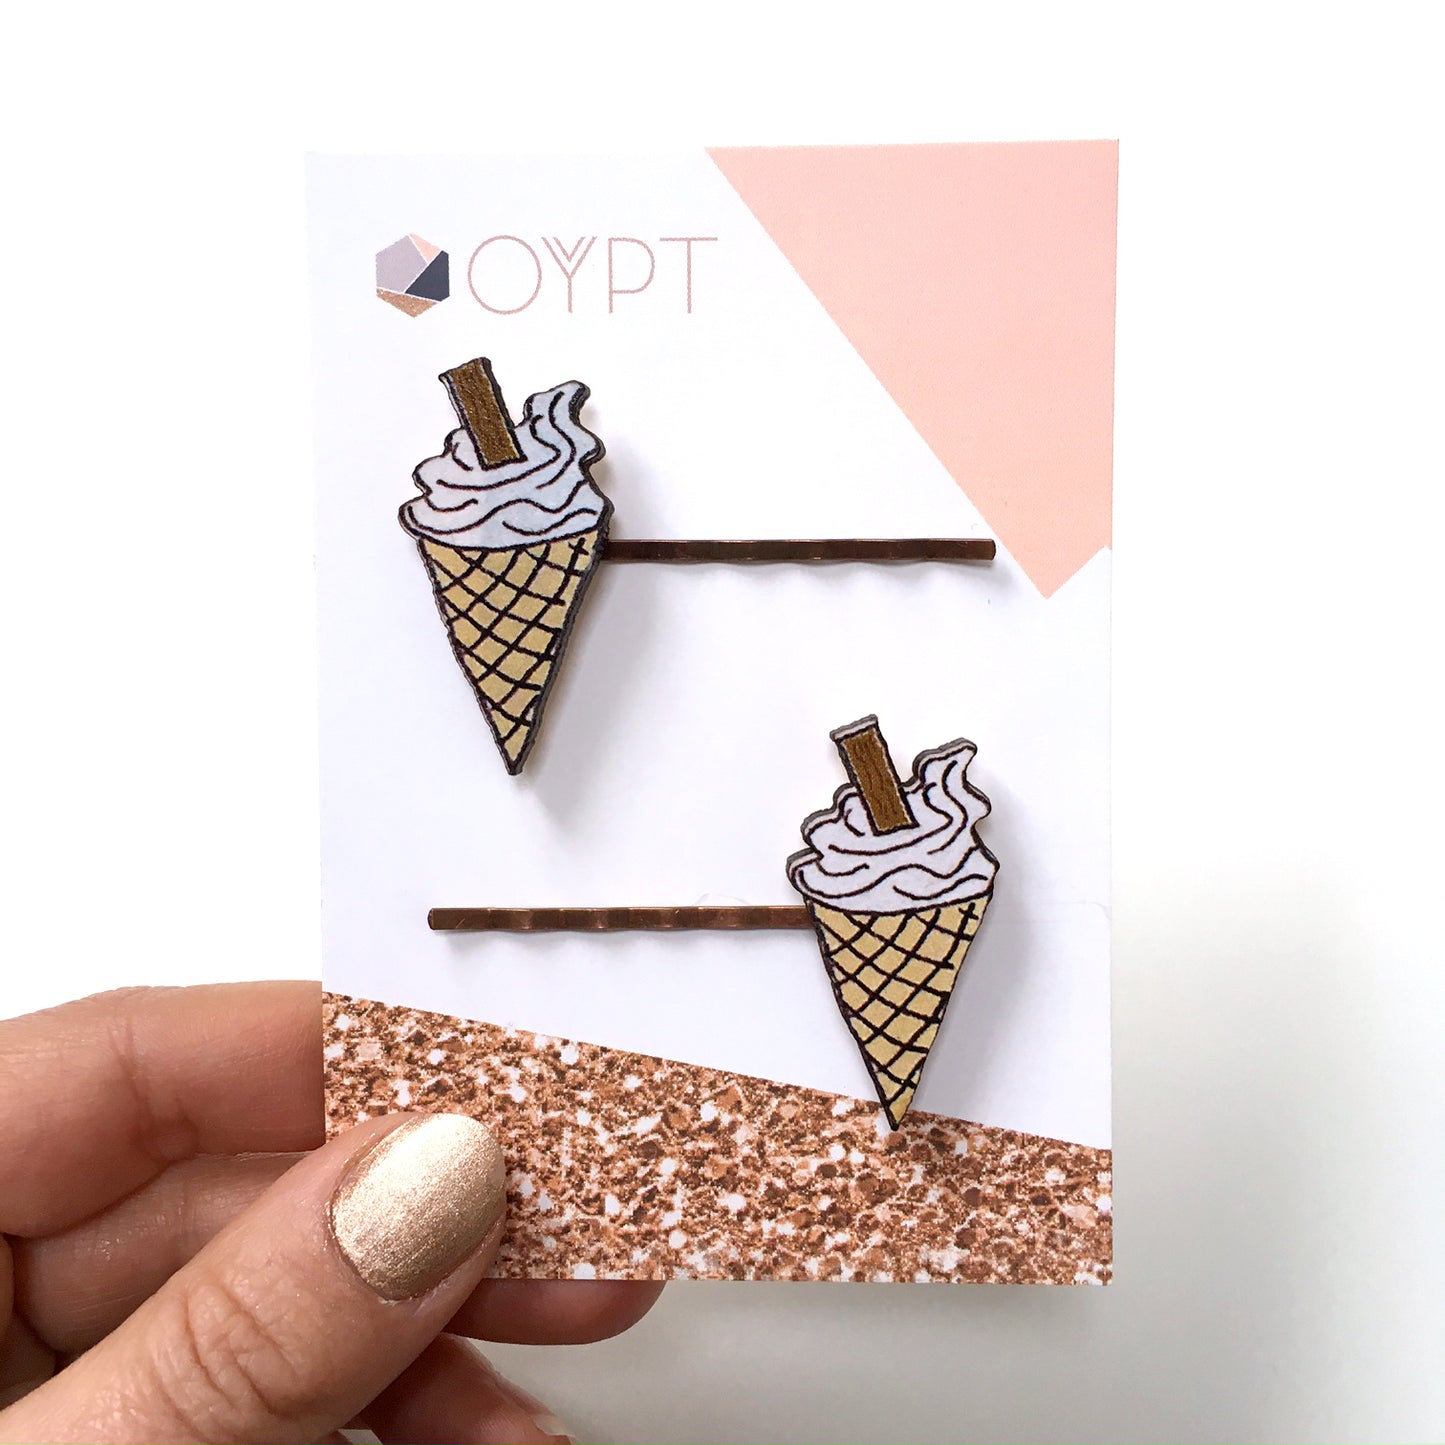 Ice cream hair pins - Summer hair accessories